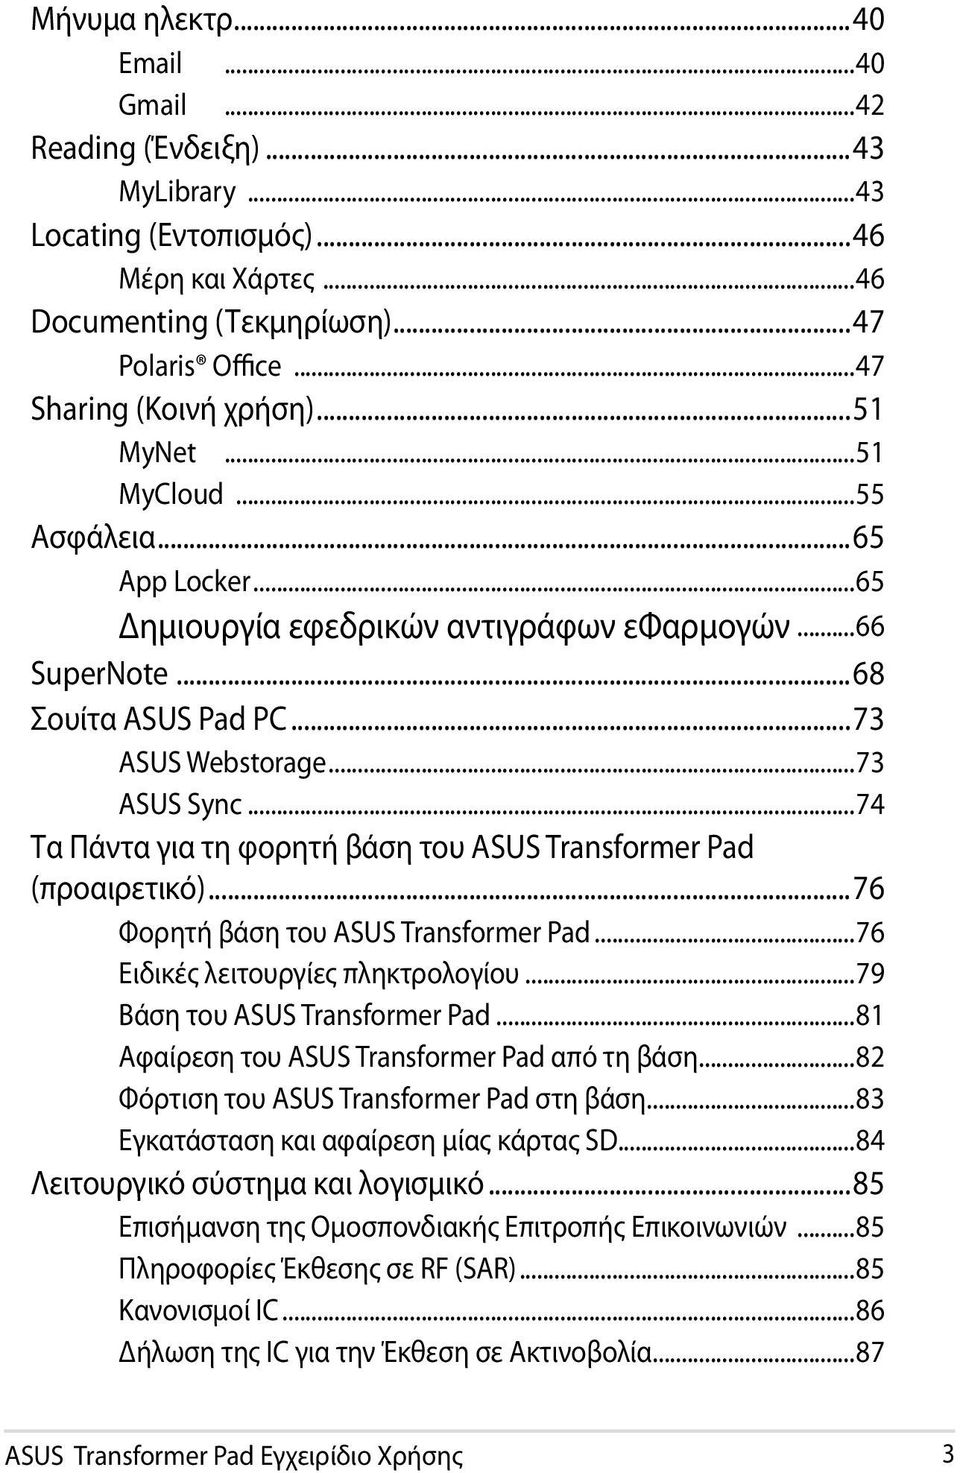 ..74 Τα Πάντα για τη φορητή βάση του ASUS Transformer Pad (προαιρετικό)...76 Φορητή βάση του ASUS Transformer Pad...76 Ειδικές λειτουργίες πληκτρολογίου...79 Βάση του ASUS Transformer Pad.